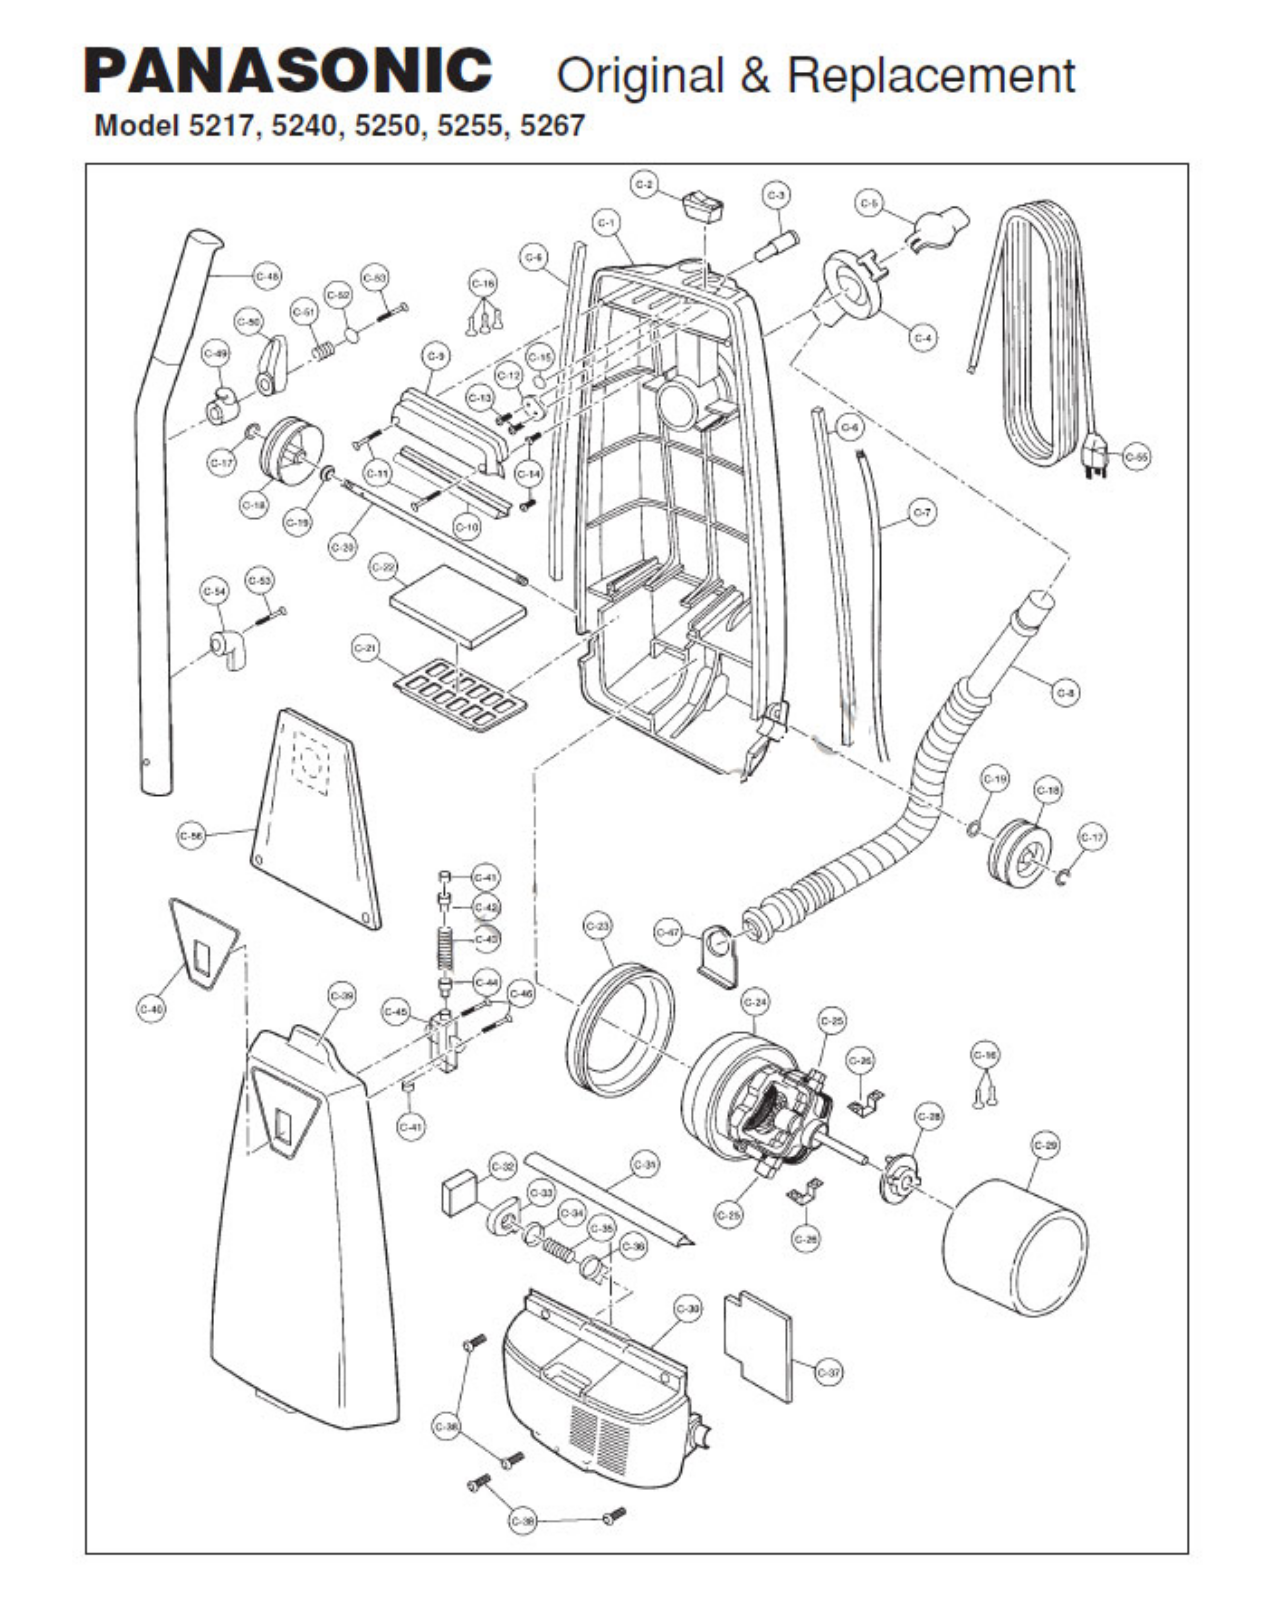 Panasonic Mc-5250, Mc-5240, Mc-5217, Mc-5255 Owner's Manual